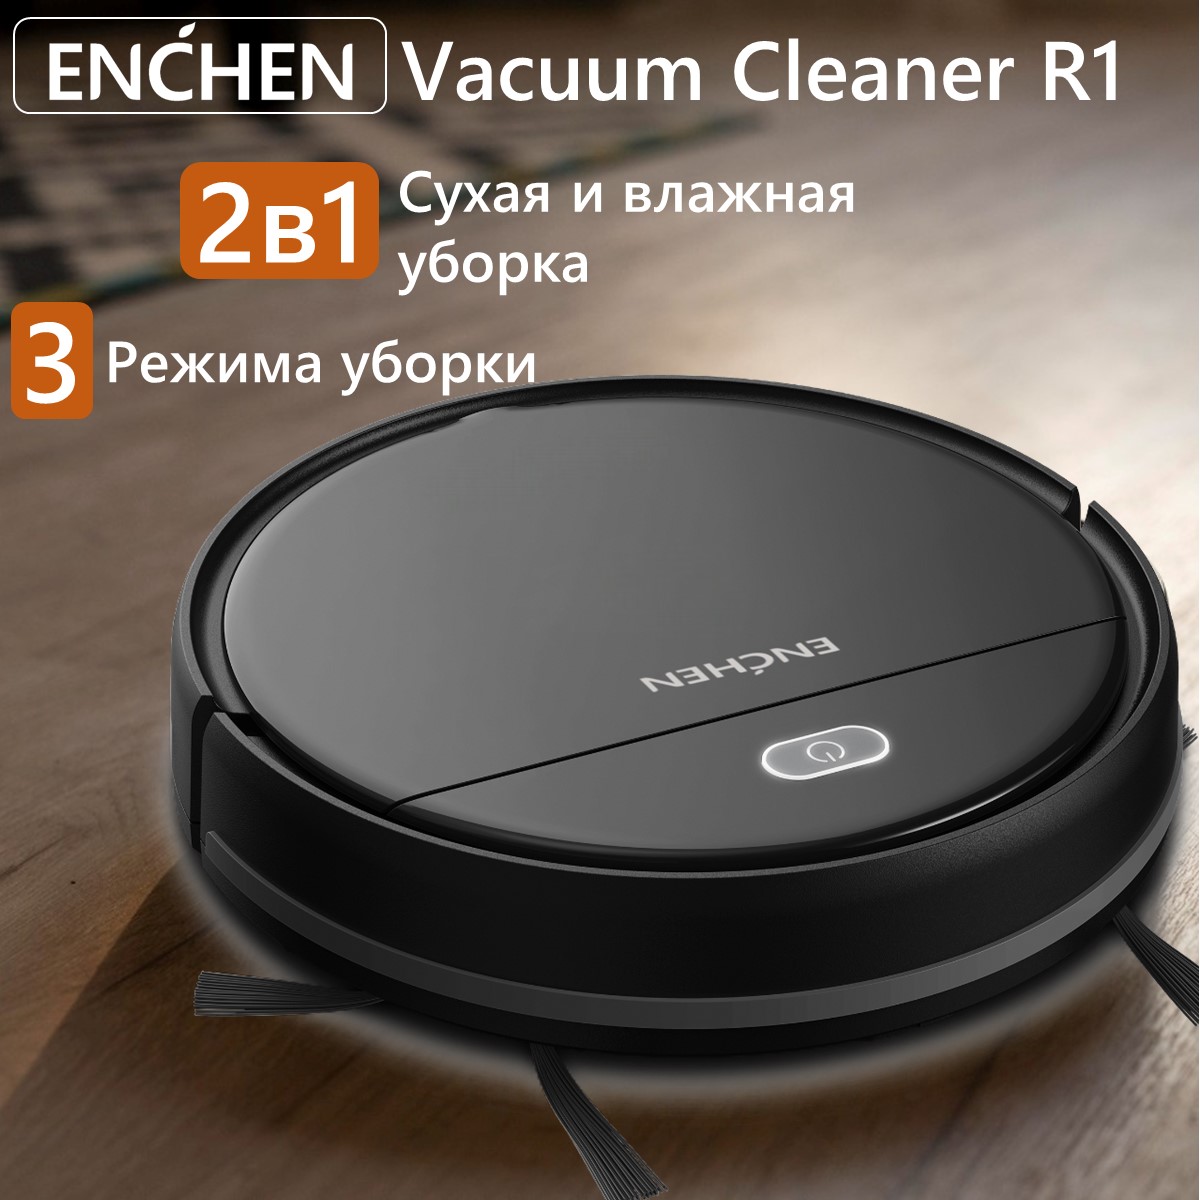 Робот-пылесос ENCHEN Vacuum Cleaner R1 черный пылесос roidmi smart cordless wet dry vacuum cleaner neo серый